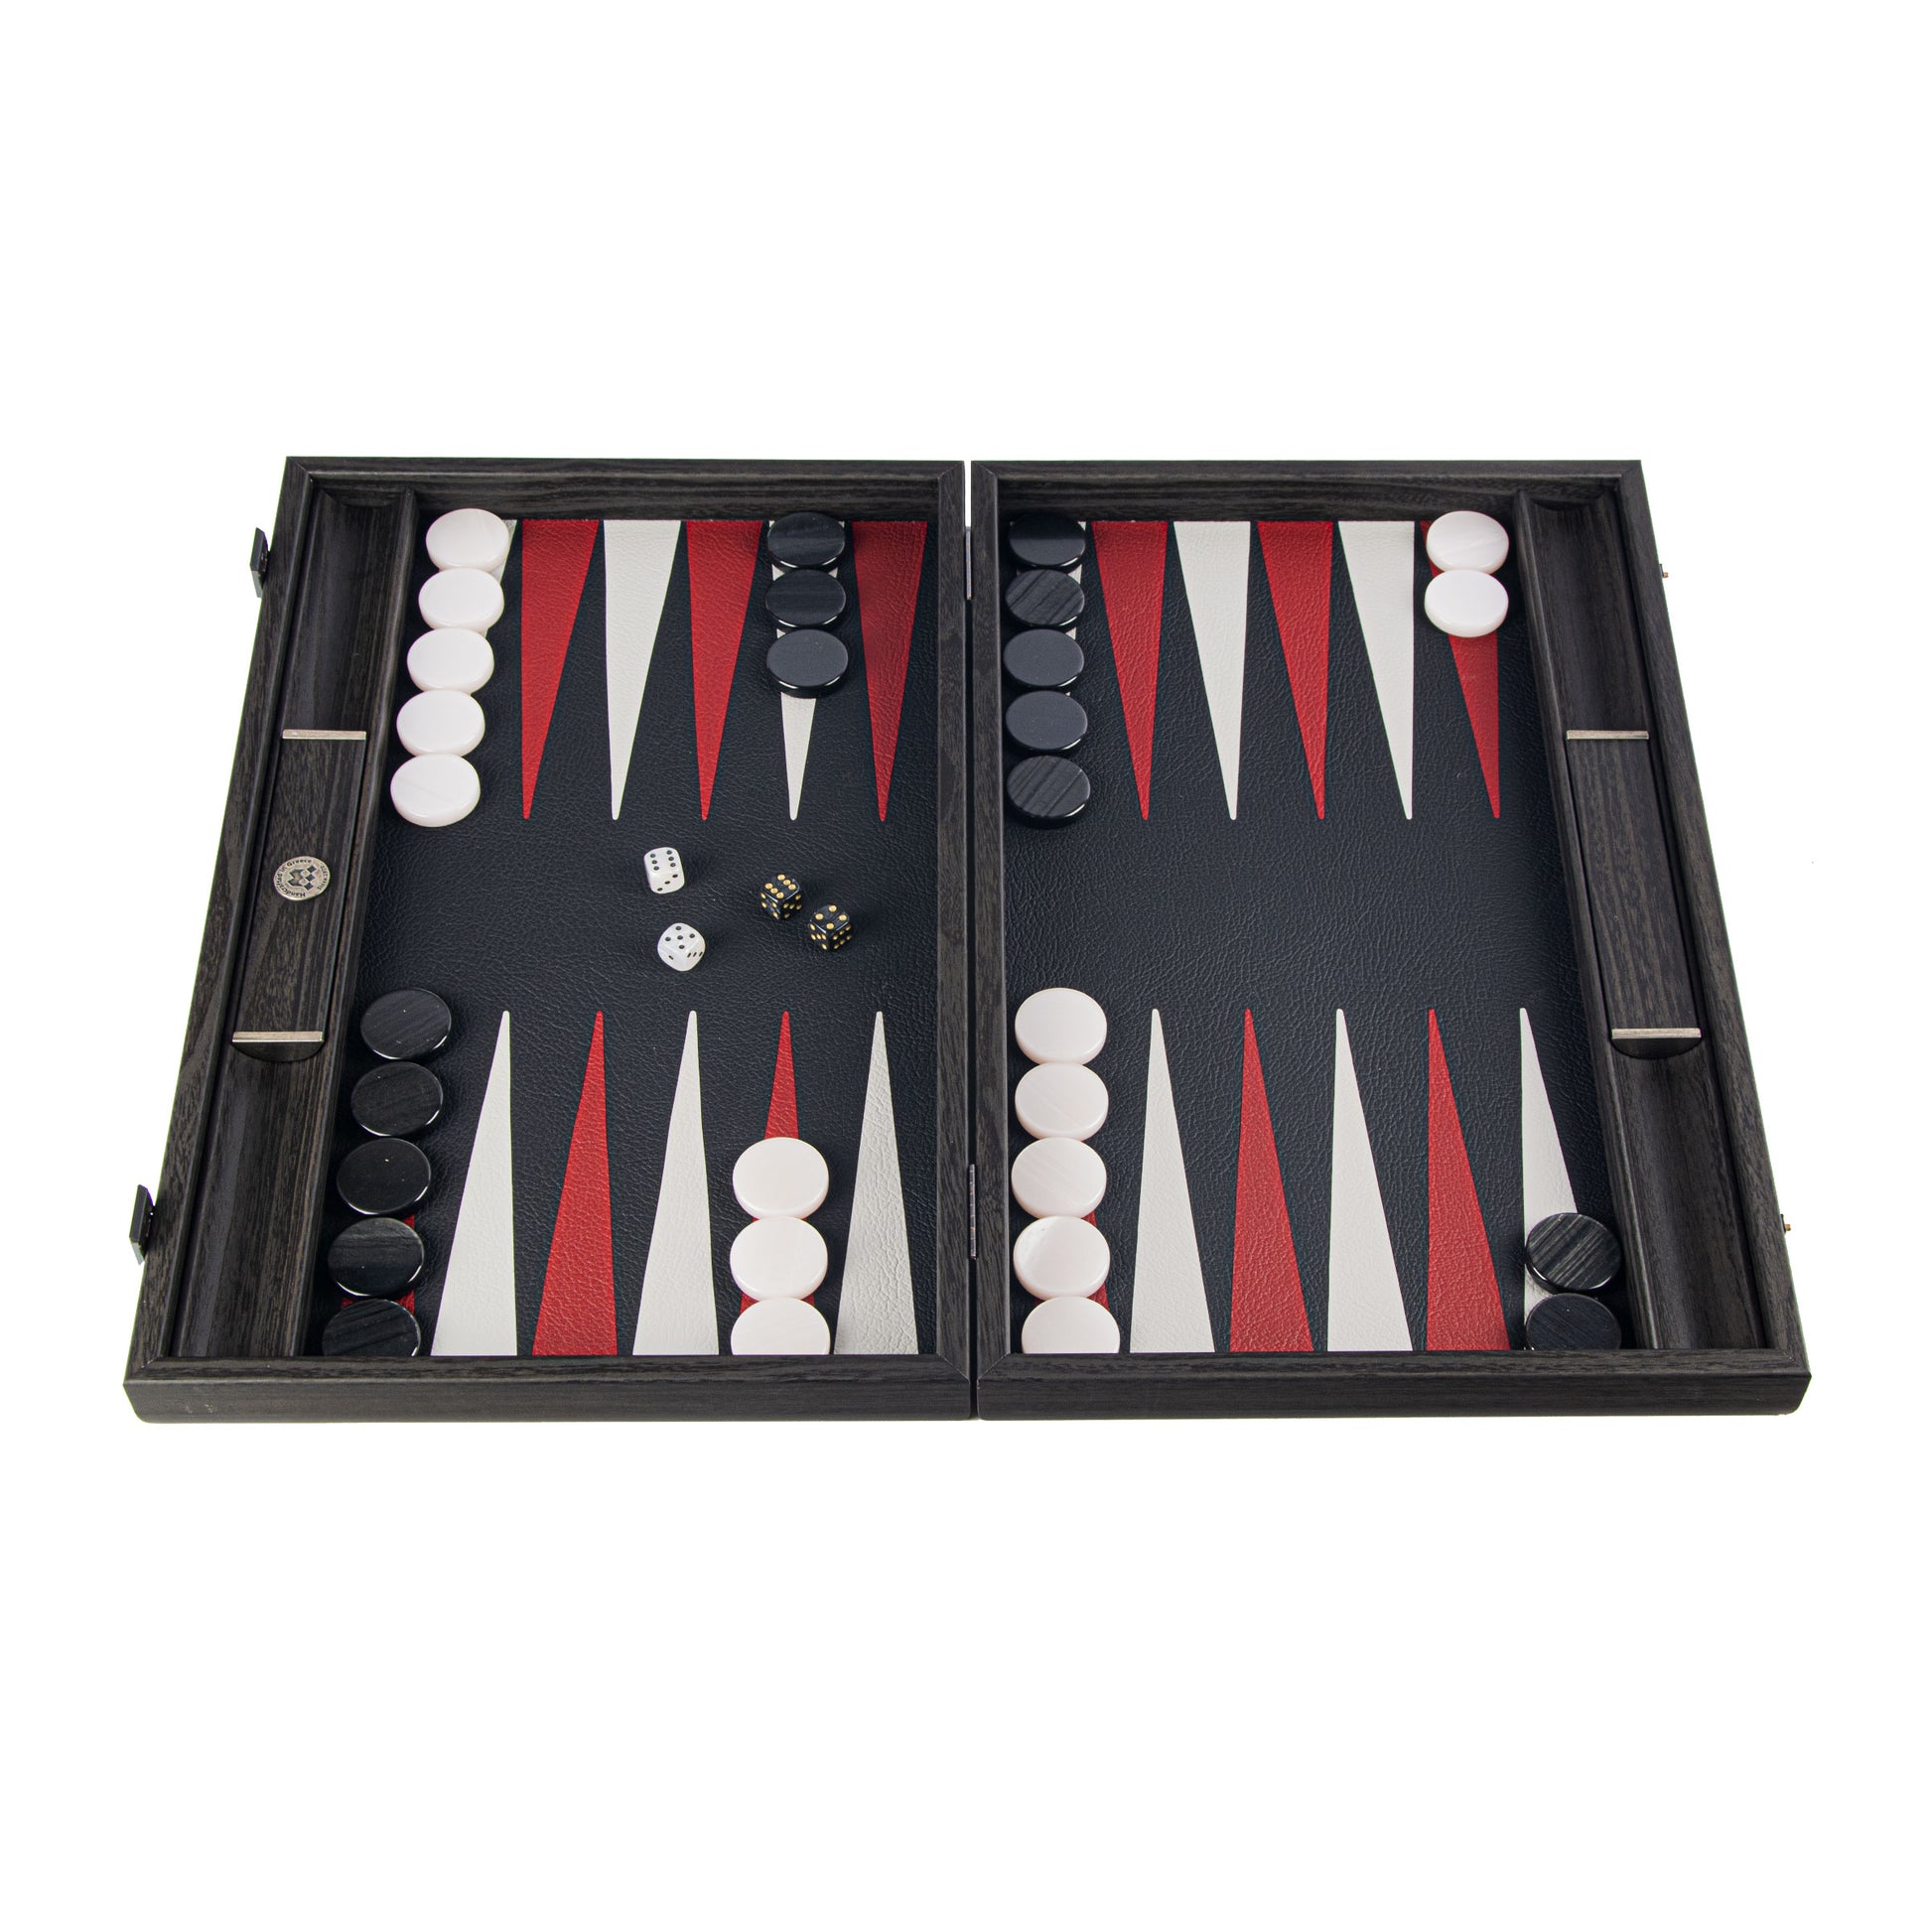 CROCODILE TOTE IN DARK GREY LEATHER Backgammon - Premium Backgammon from MANOPOULOS Chess & Backgammon - Just €519! Shop now at MANOPOULOS Chess & Backgammon